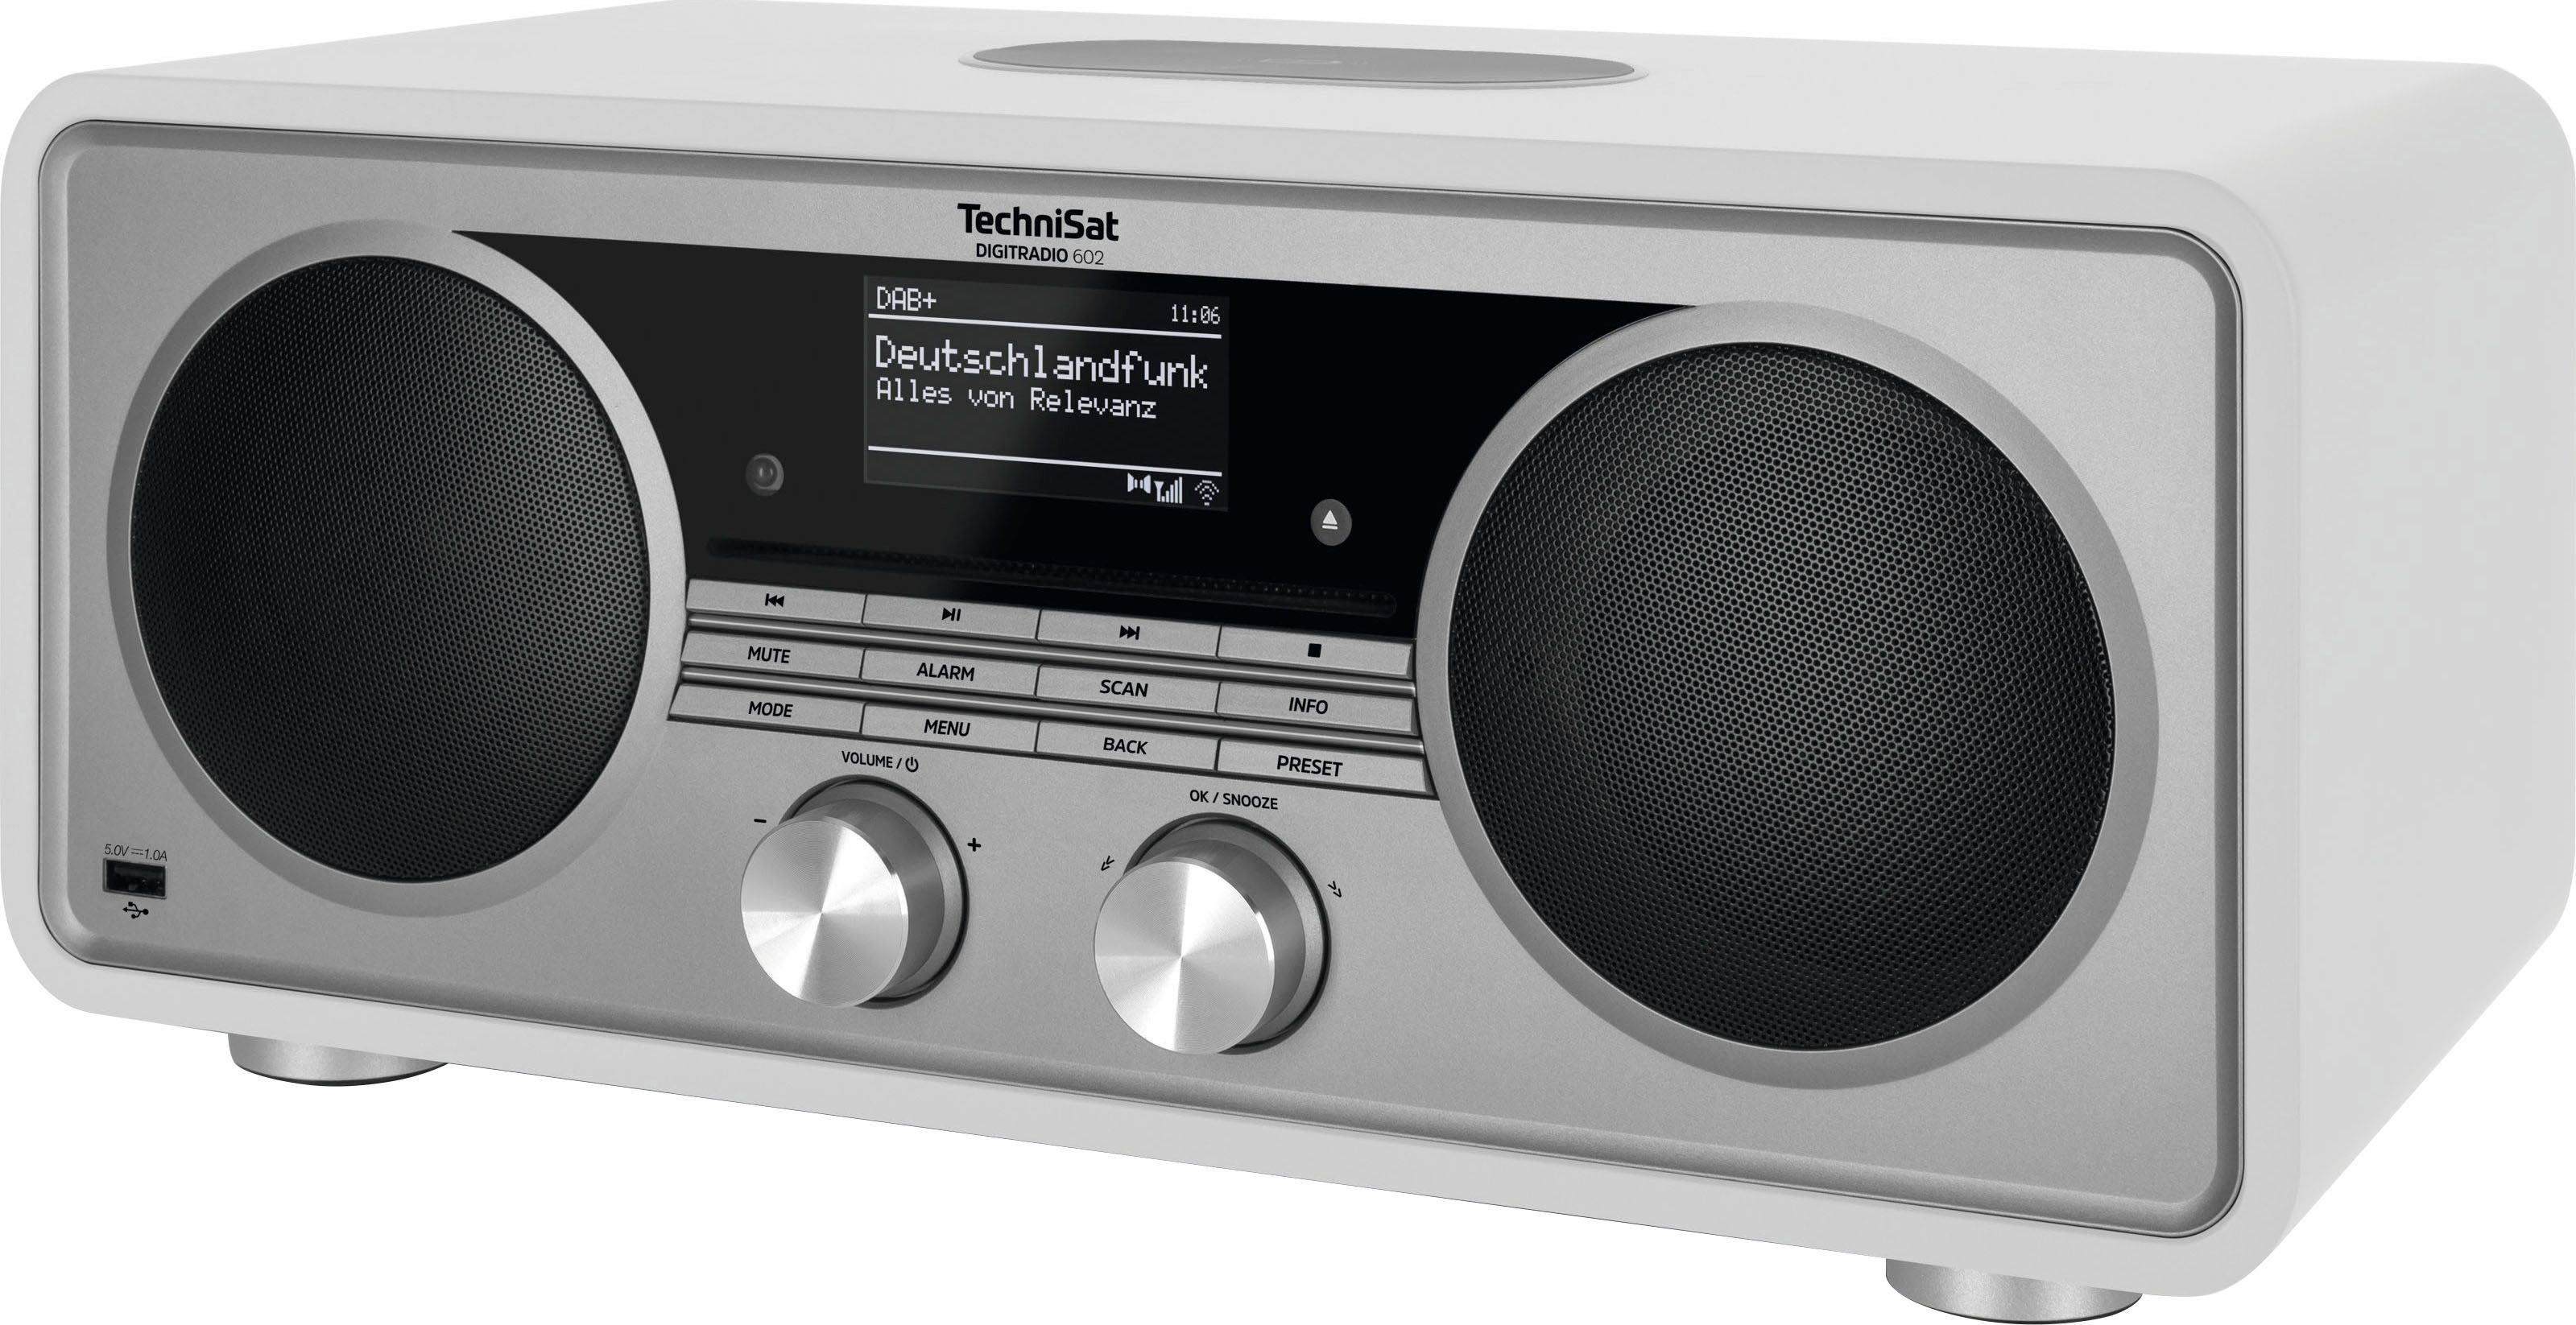 TechniSat DIGITRADIO 602 Internet-Radio (Digitalradio W, Stereoanlage, CD-Player) 70 (DAB), UKW RDS, mit Weiß/Silber